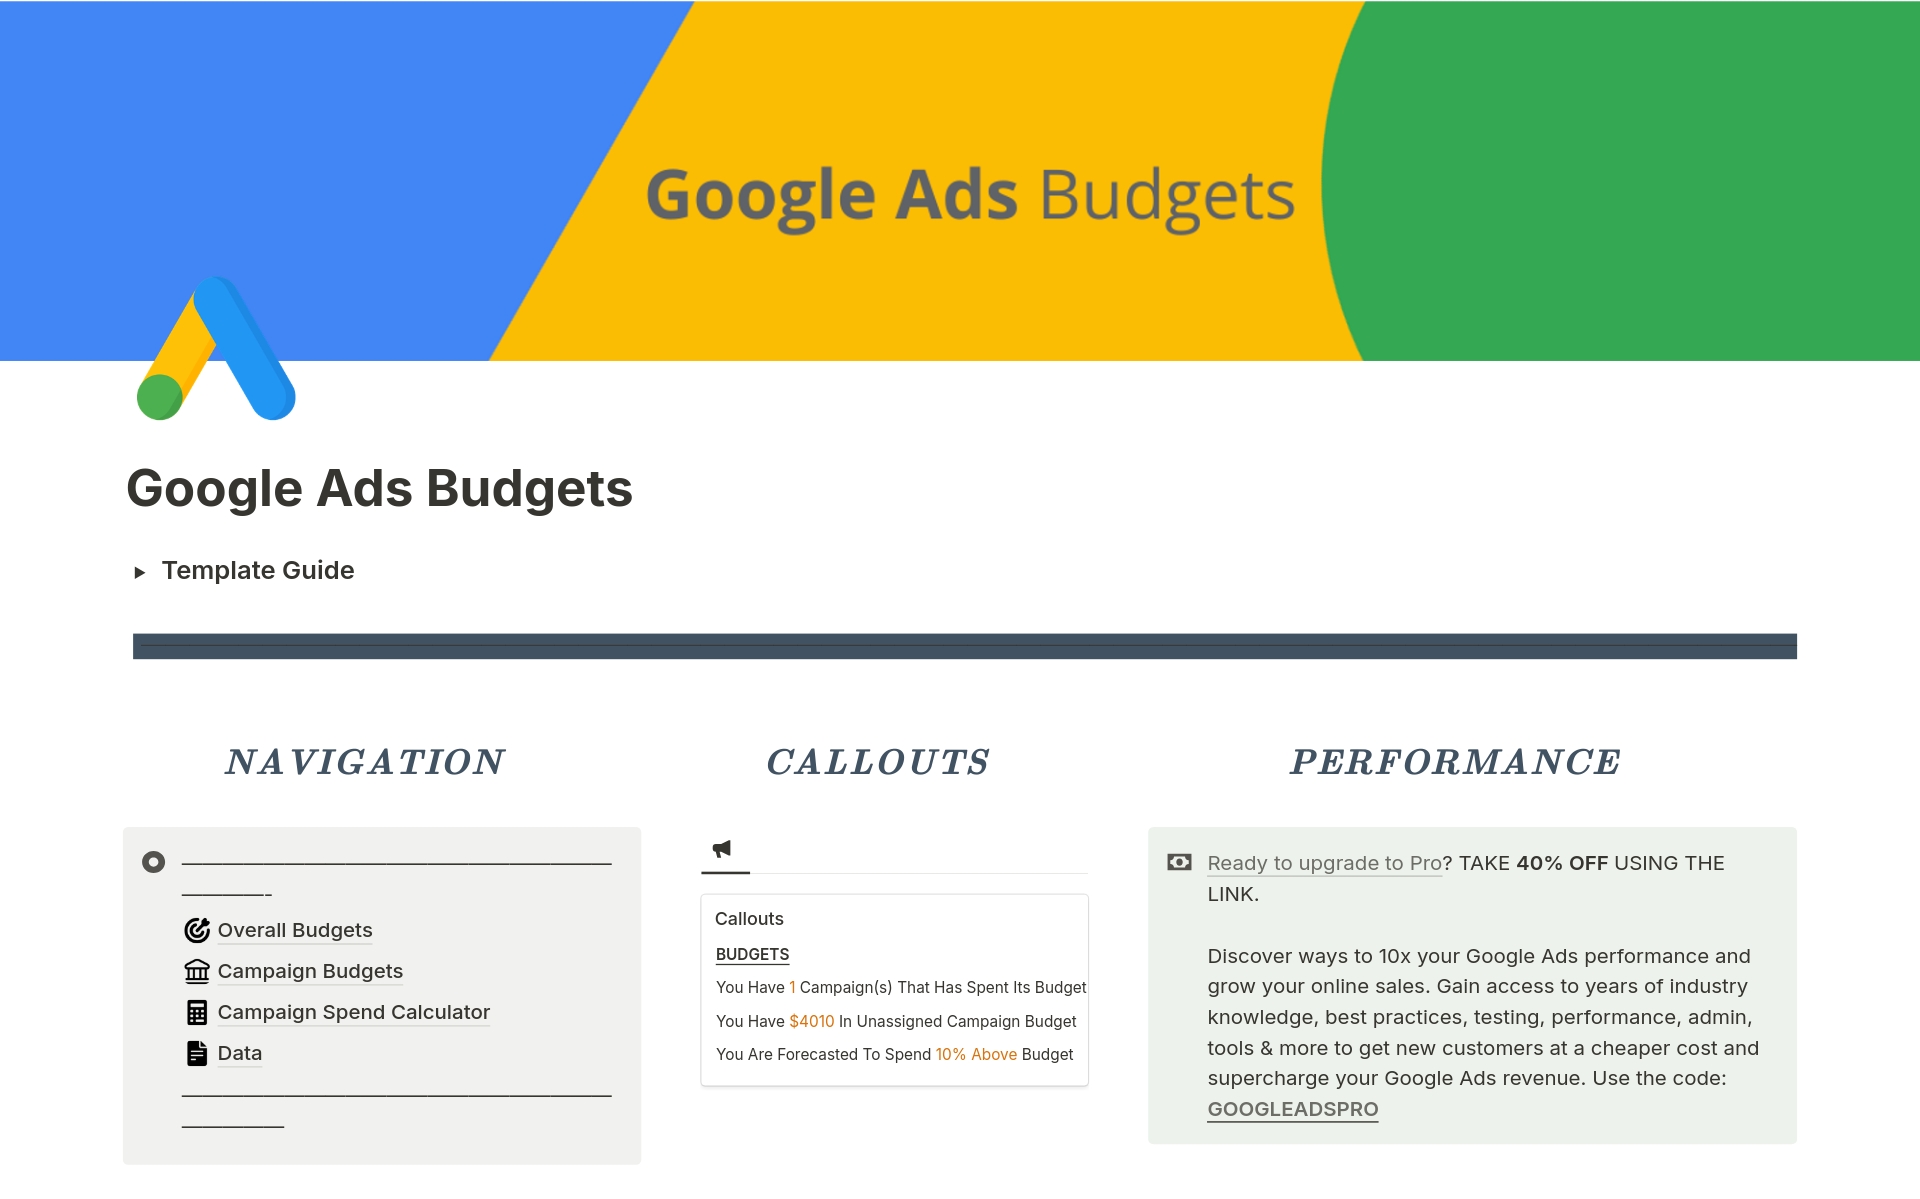 Vista previa de una plantilla para Google Ads Budgets